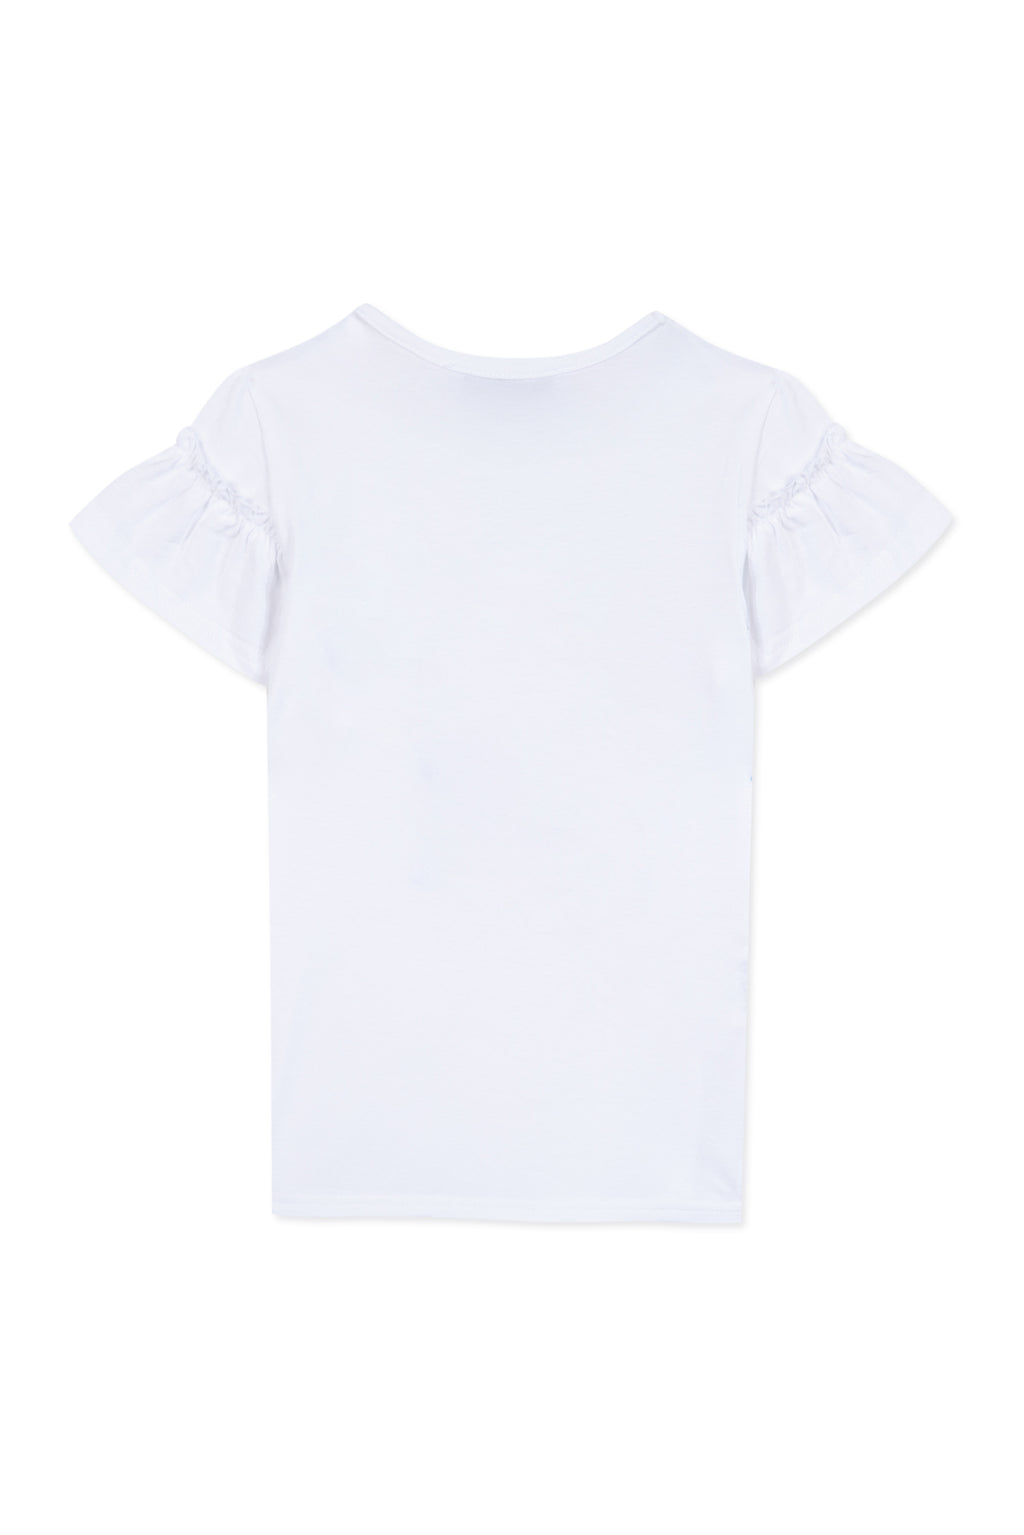 T-shirt - White Illustration heart